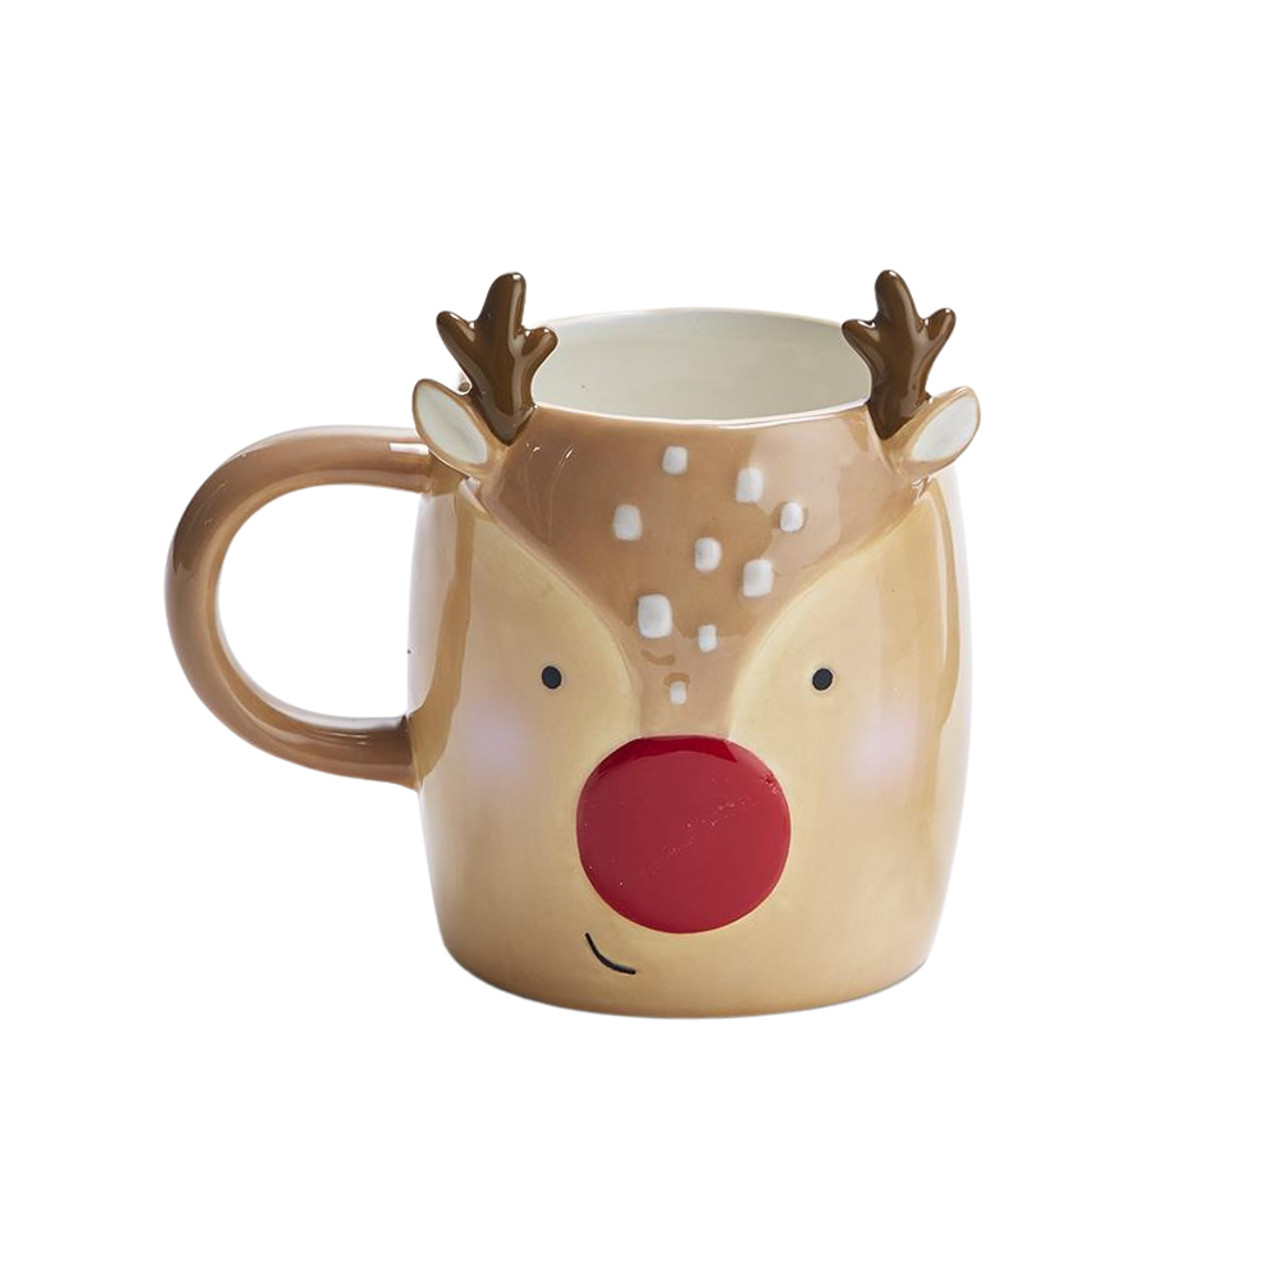 Ticking Stripe Santa and Reindeer Mug Set of 2